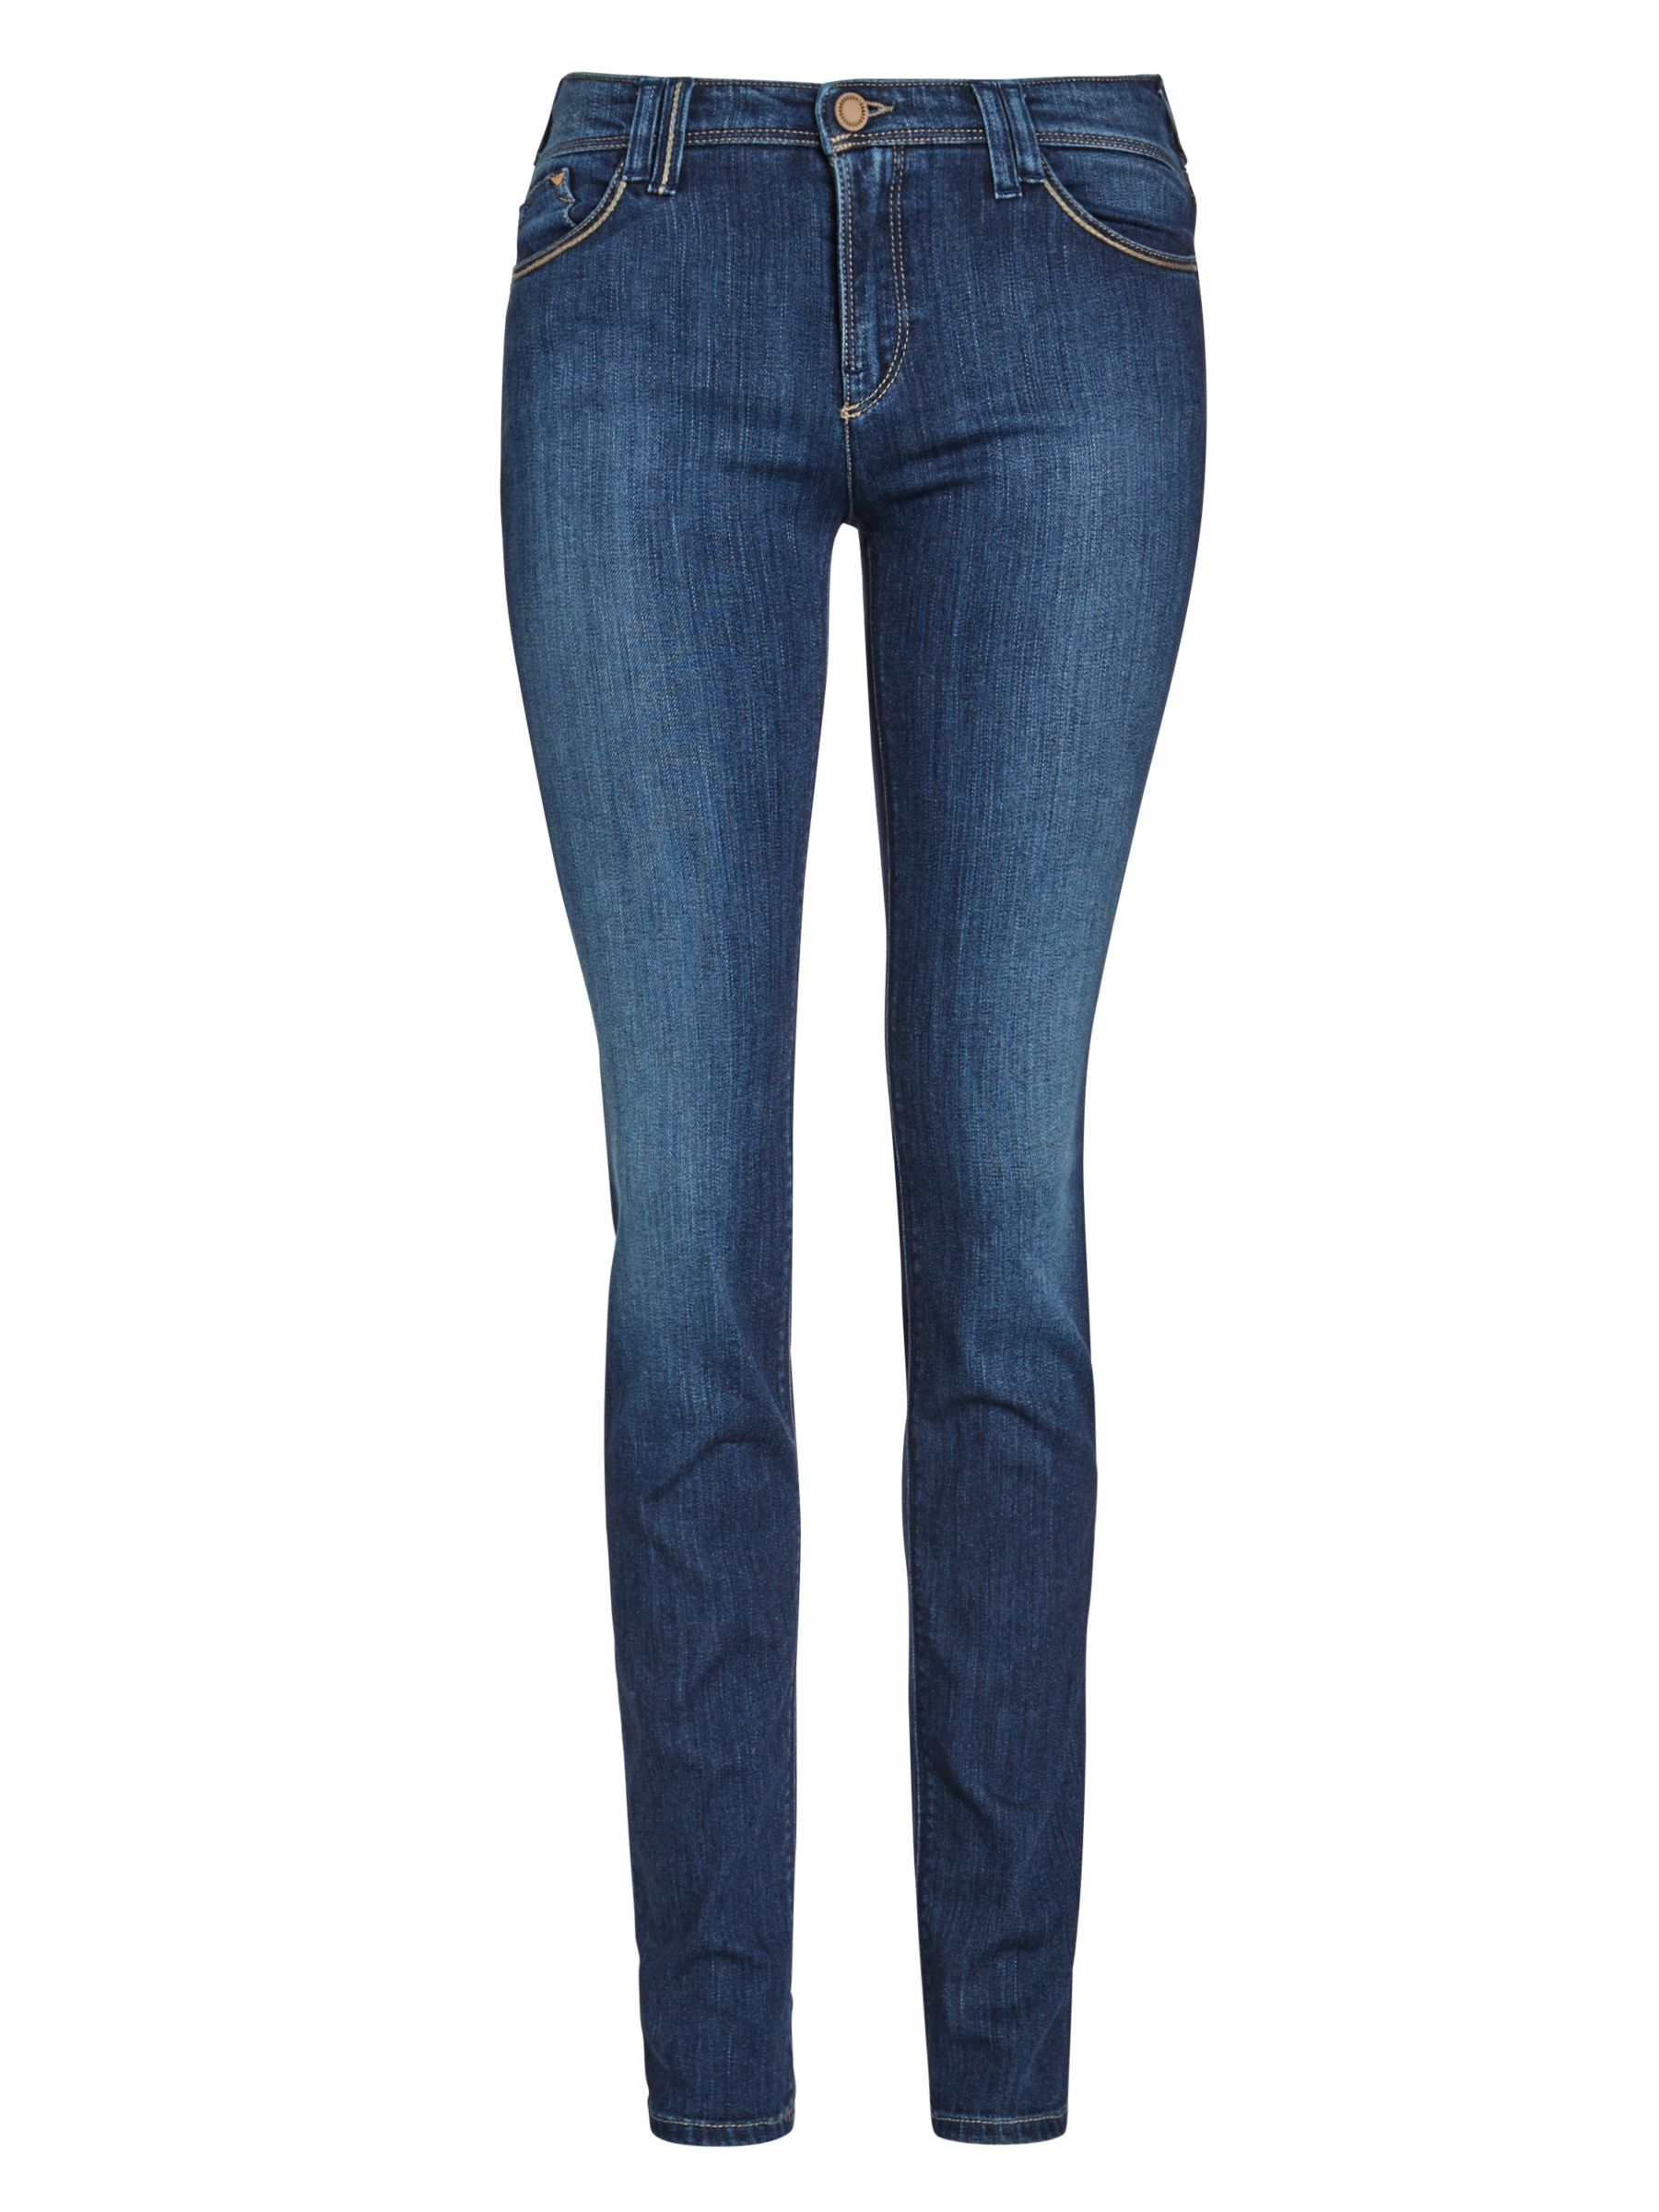 Armani Jeans J28 Skinny Jeans, Mid Blue 